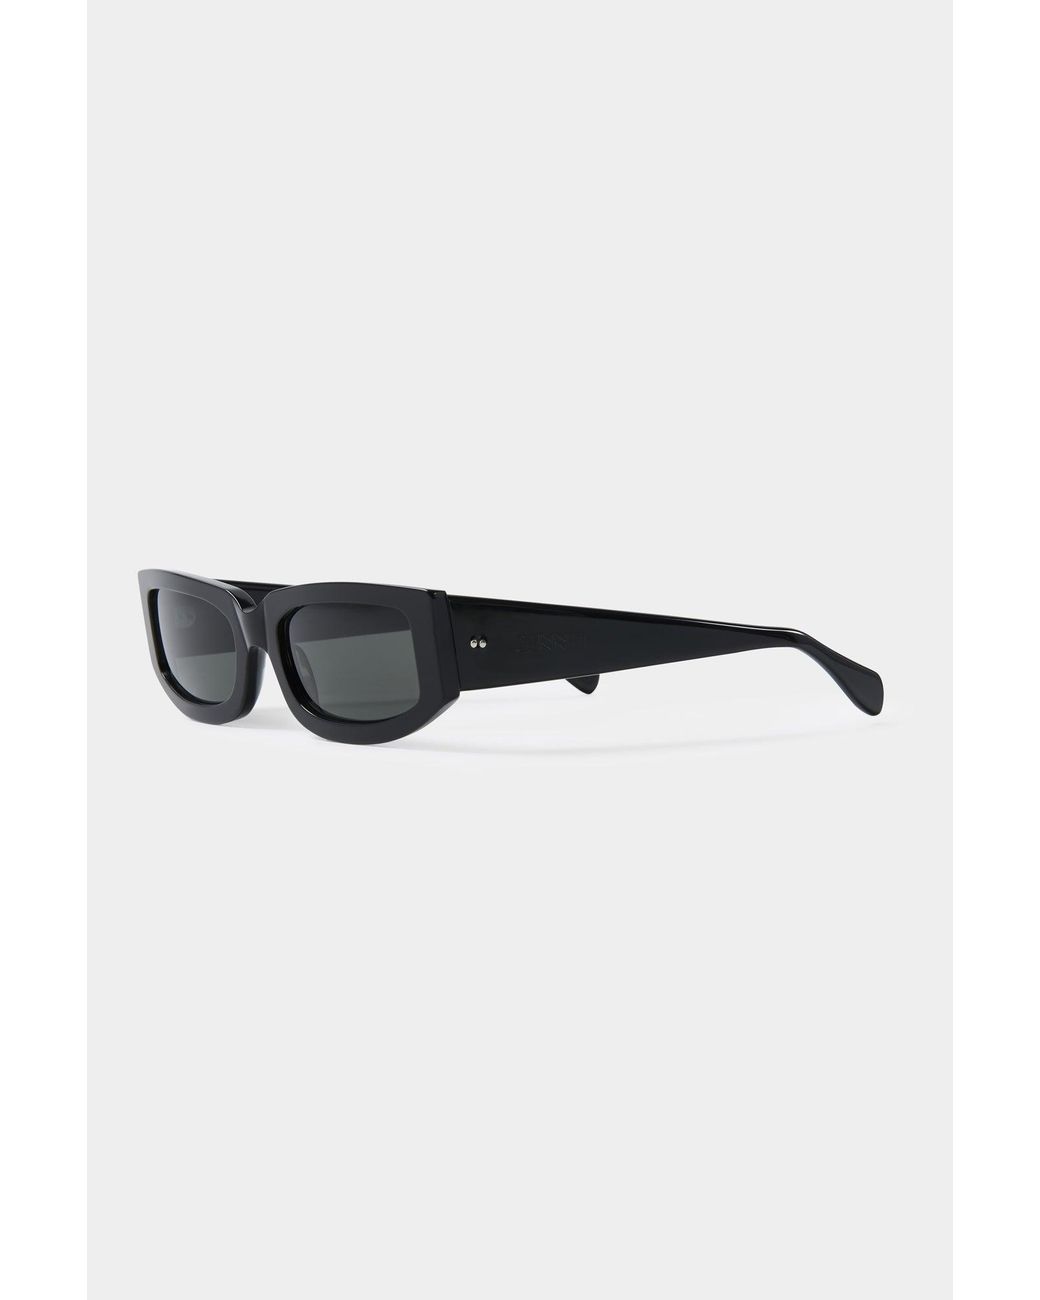 Sunnei Women's Prototipo 1.1 Sunglasses / Black